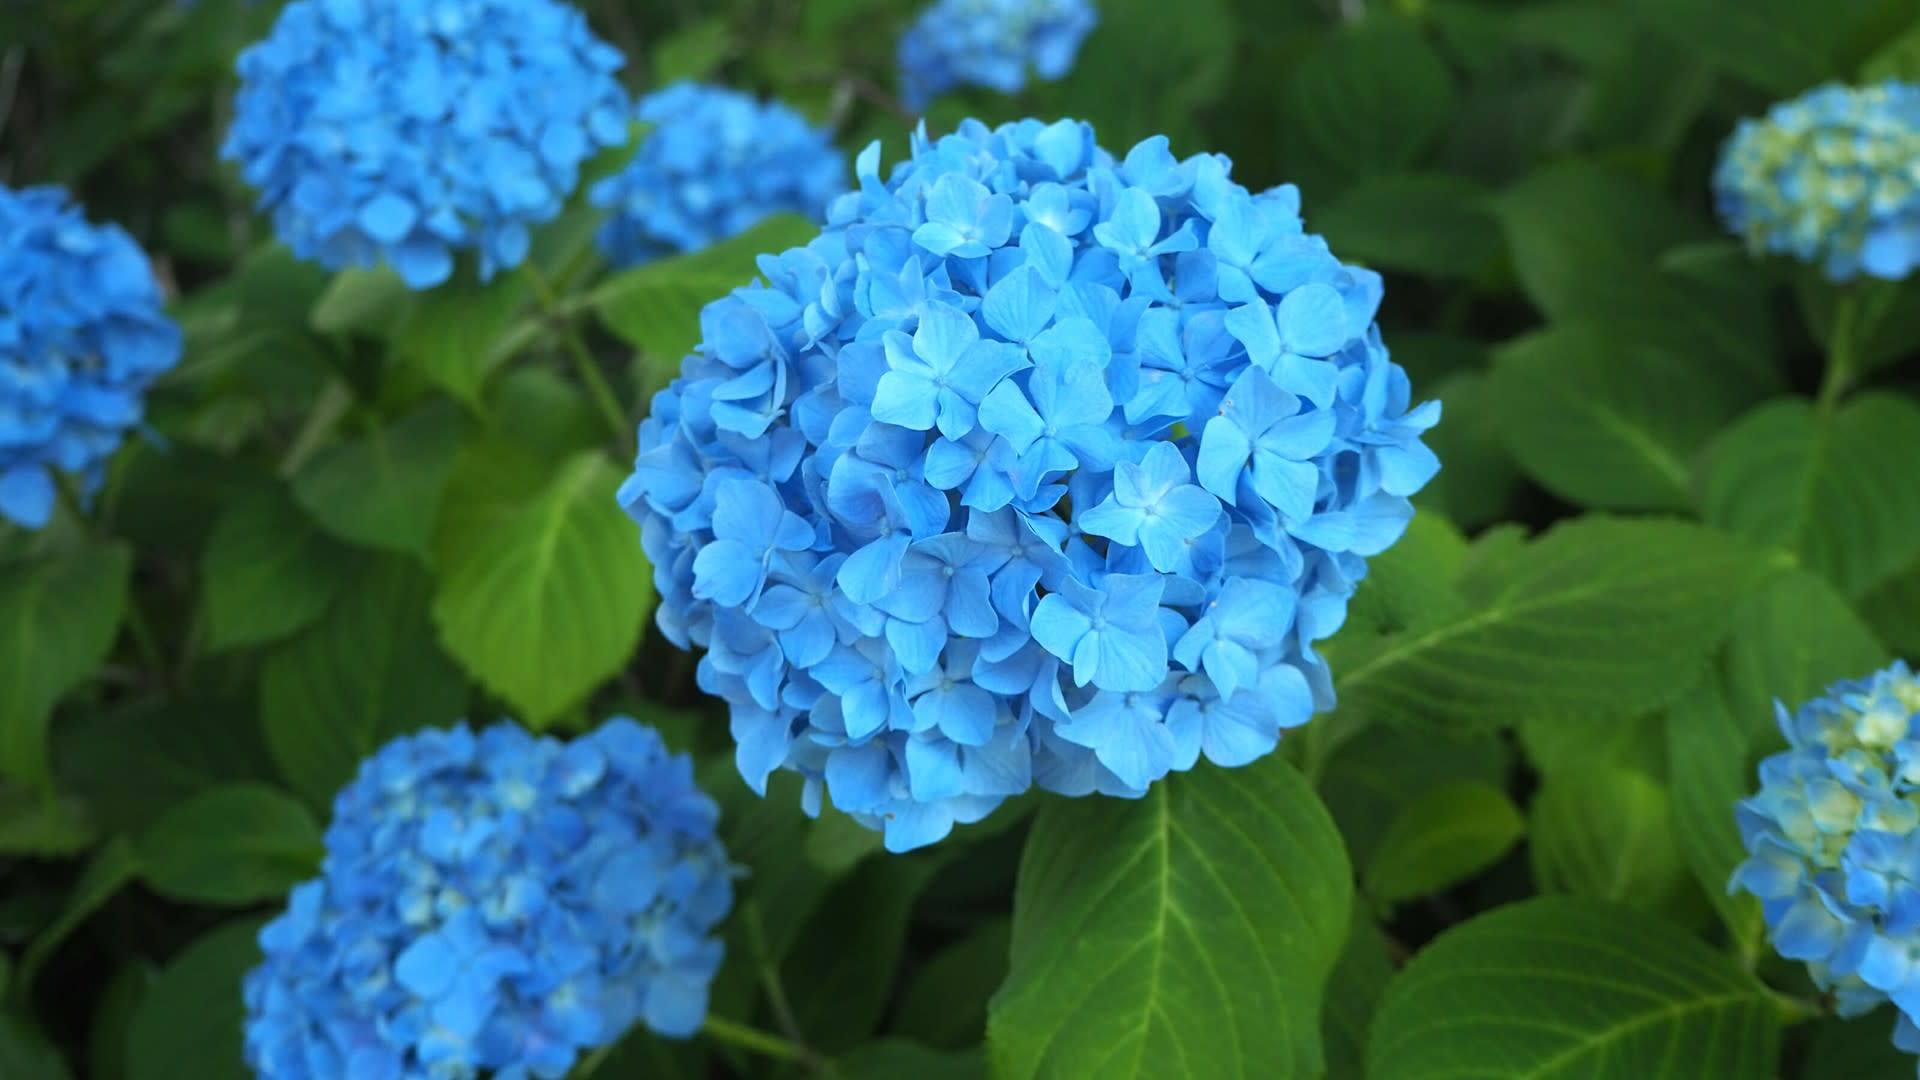 御池通りの紫陽花見頃 青の世界 京都で定年後生活